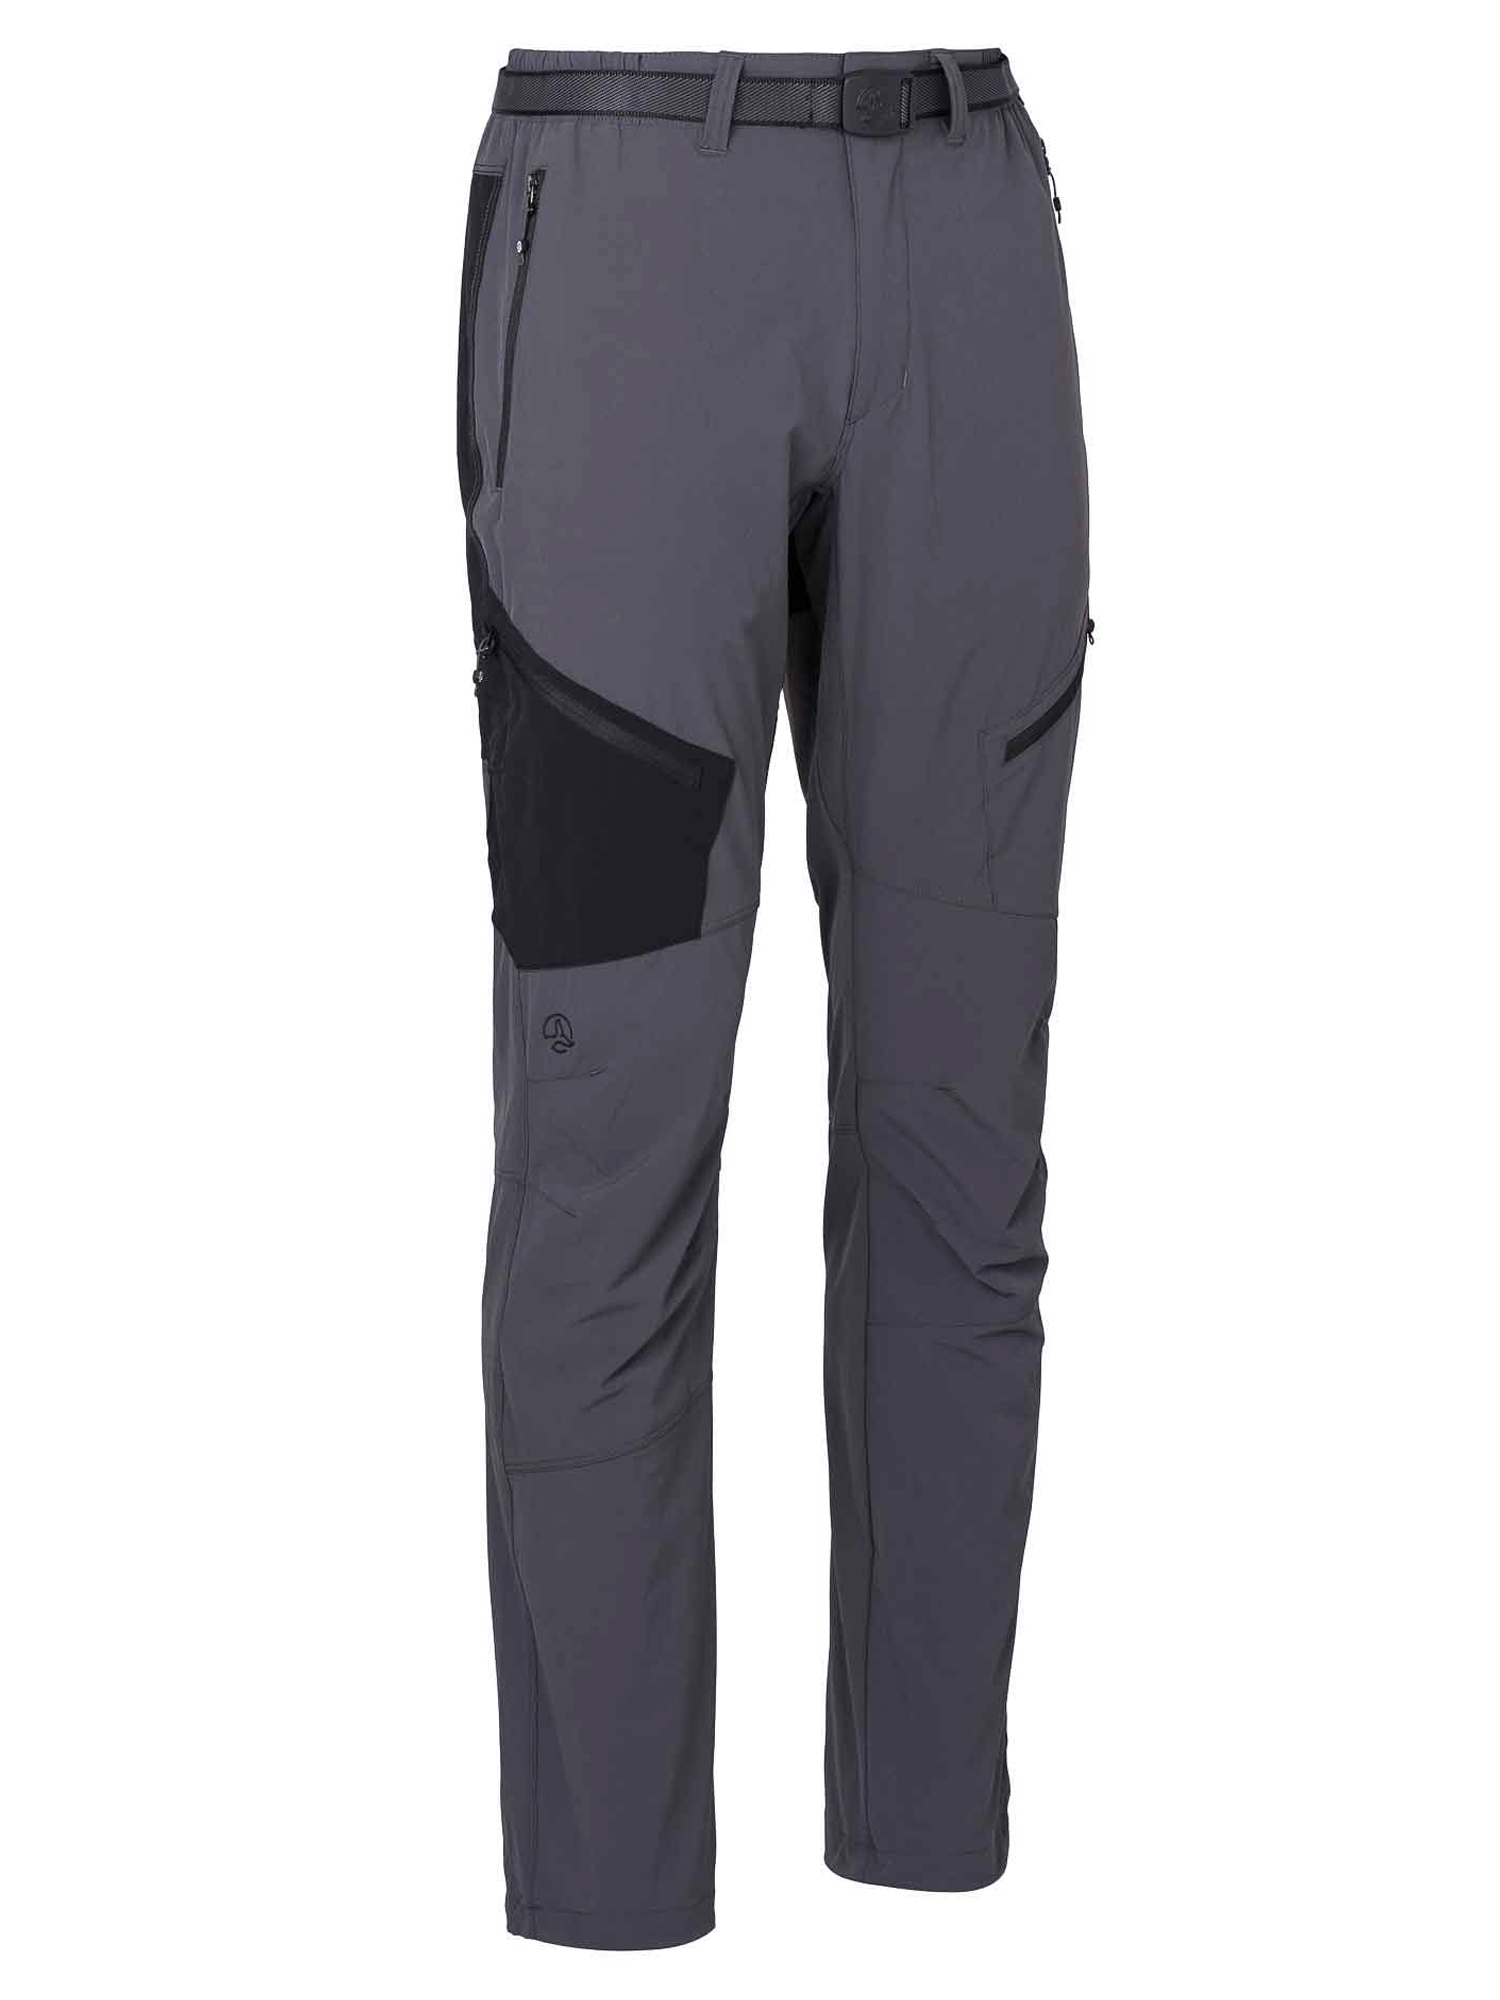 фото Спортивные брюки мужские ternua torlok pt m серые xl